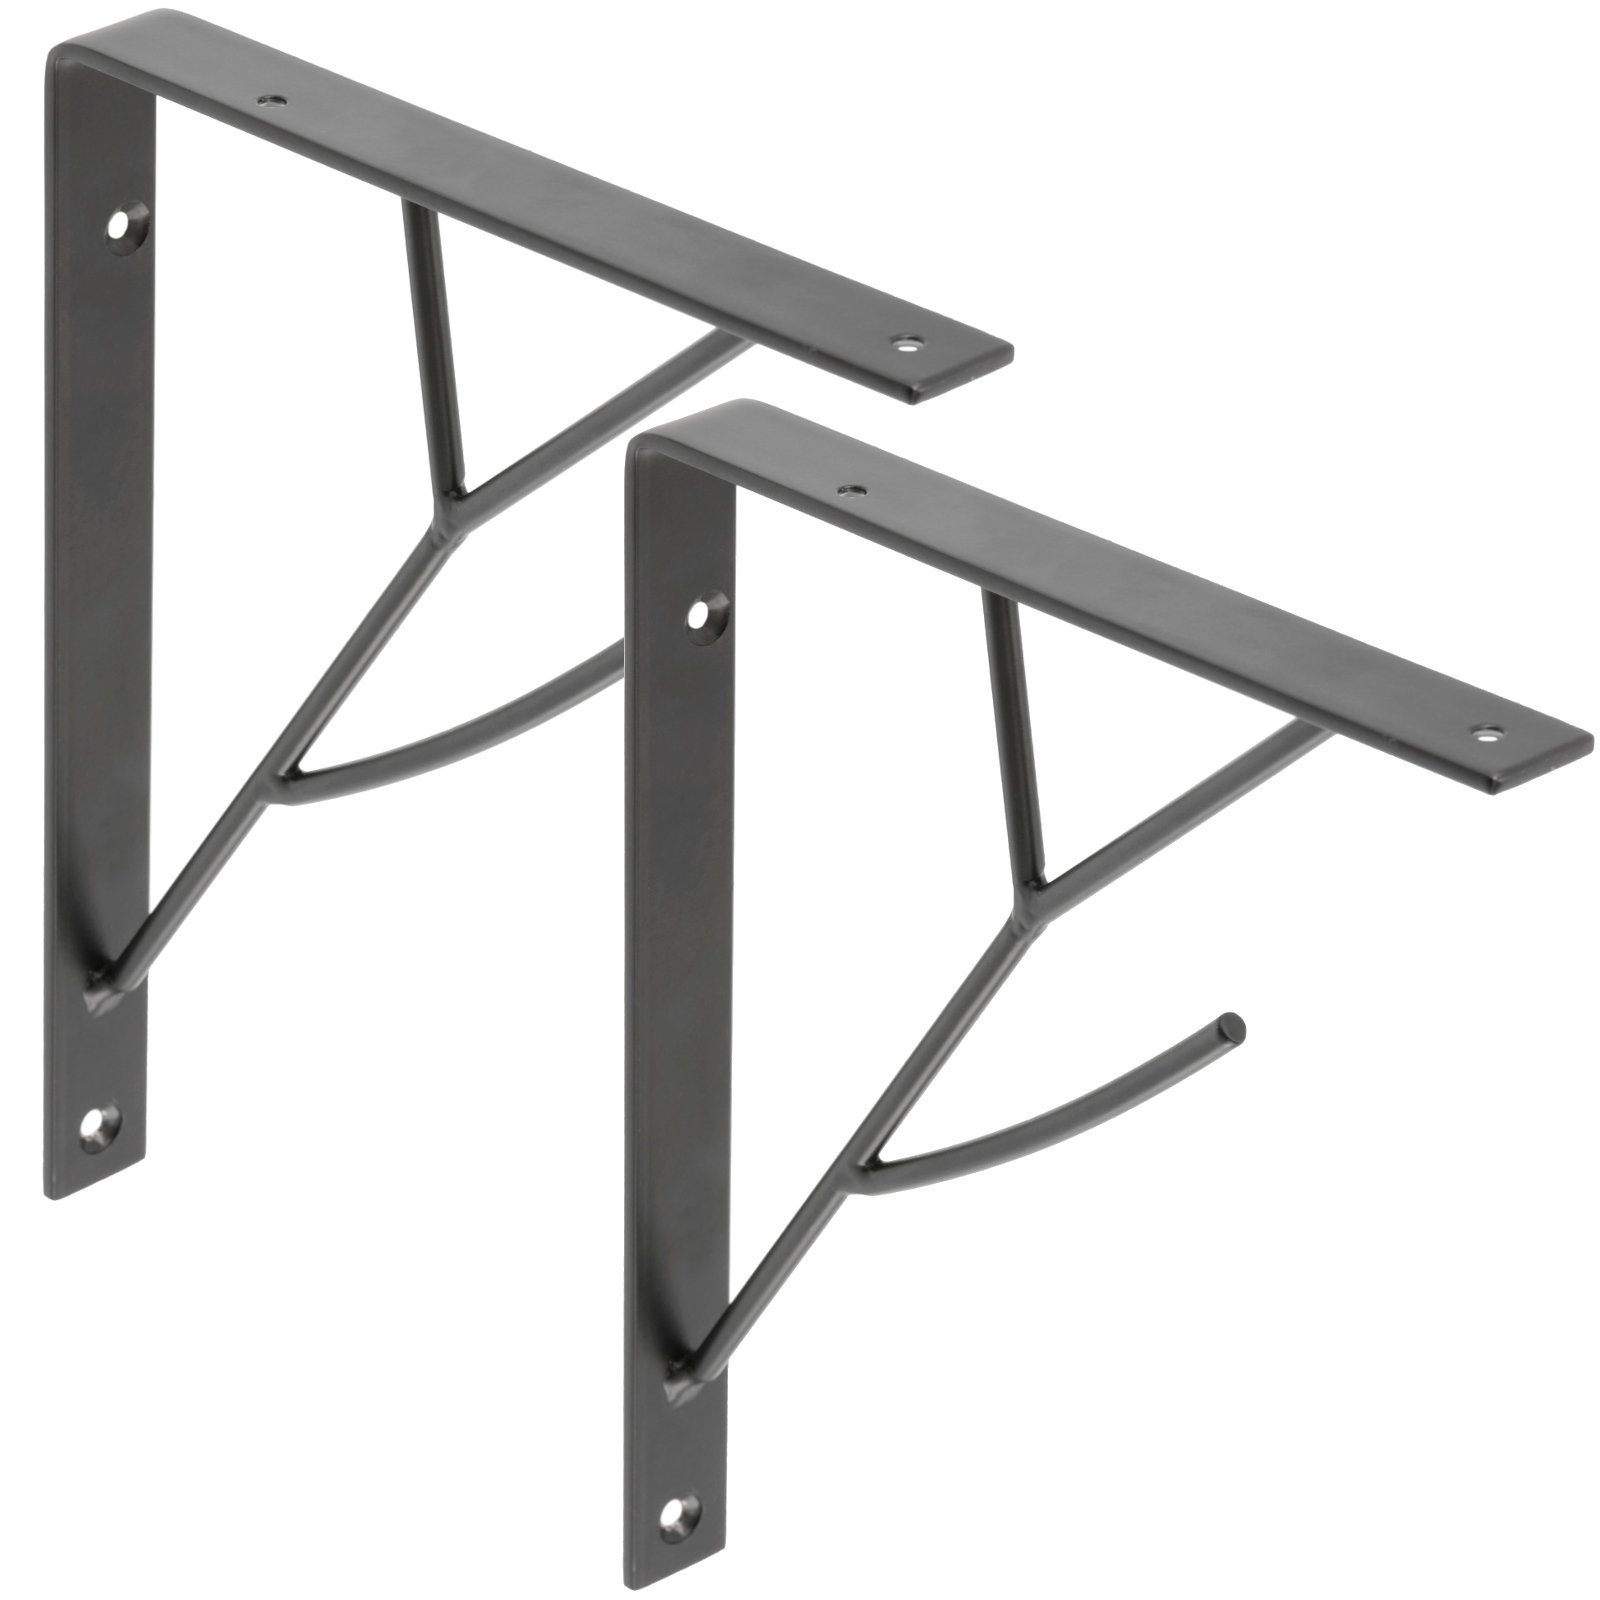 SO-TECH® Wandregalhalter Regalkonsole RK13 schwarz Stahl Regalwinkel für Holzplatten, 2-tlg., Tragkraft je Paar: 20 kg